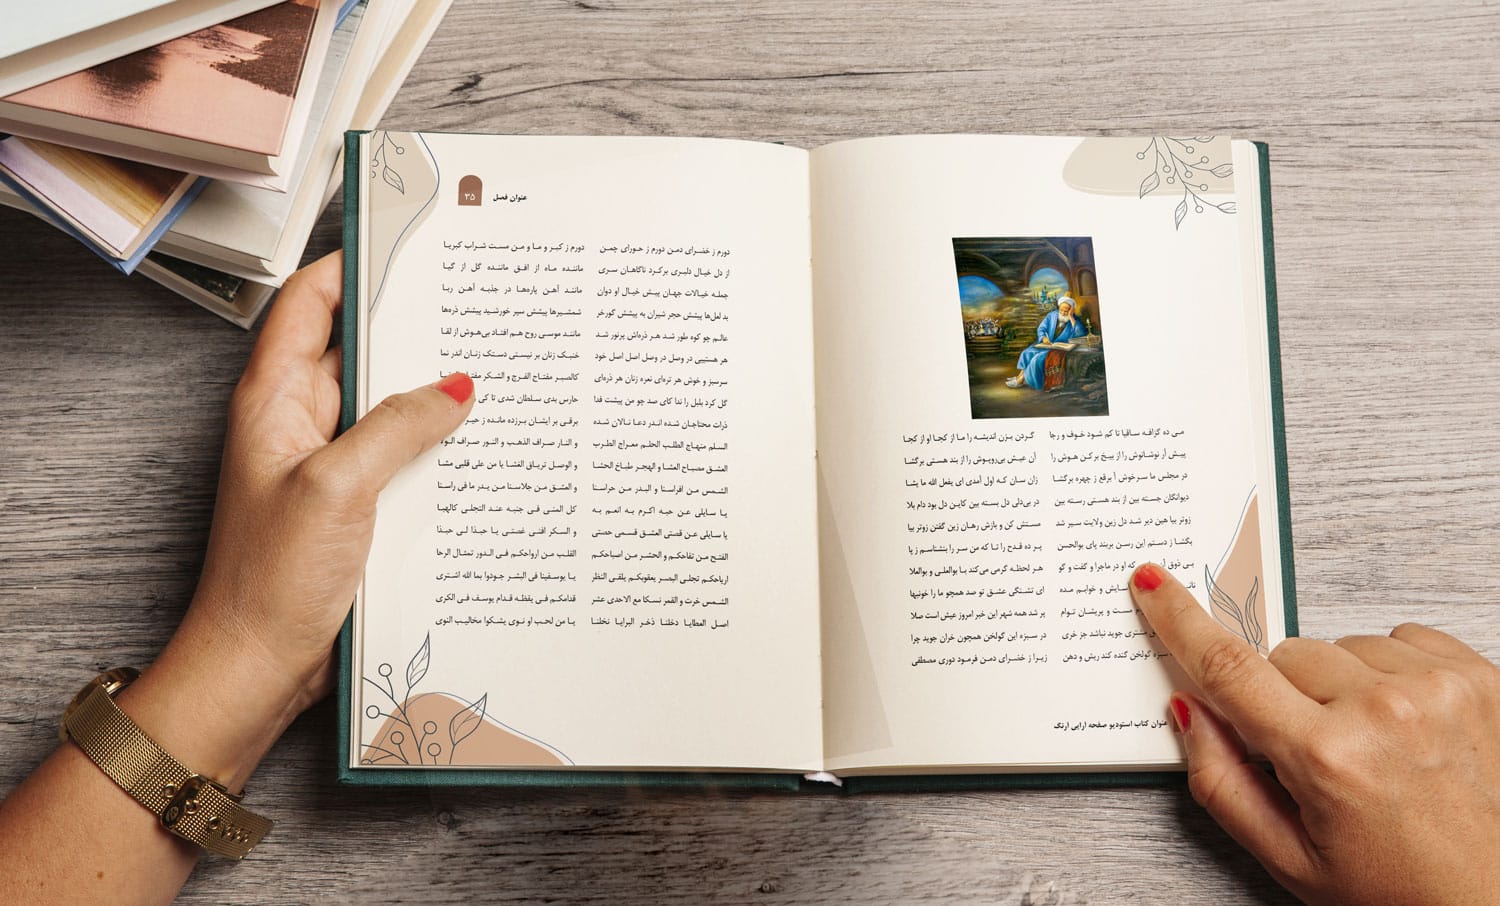 قالب آماده طراحی کتاب شعر غزل و قصیده در ایندیزاین